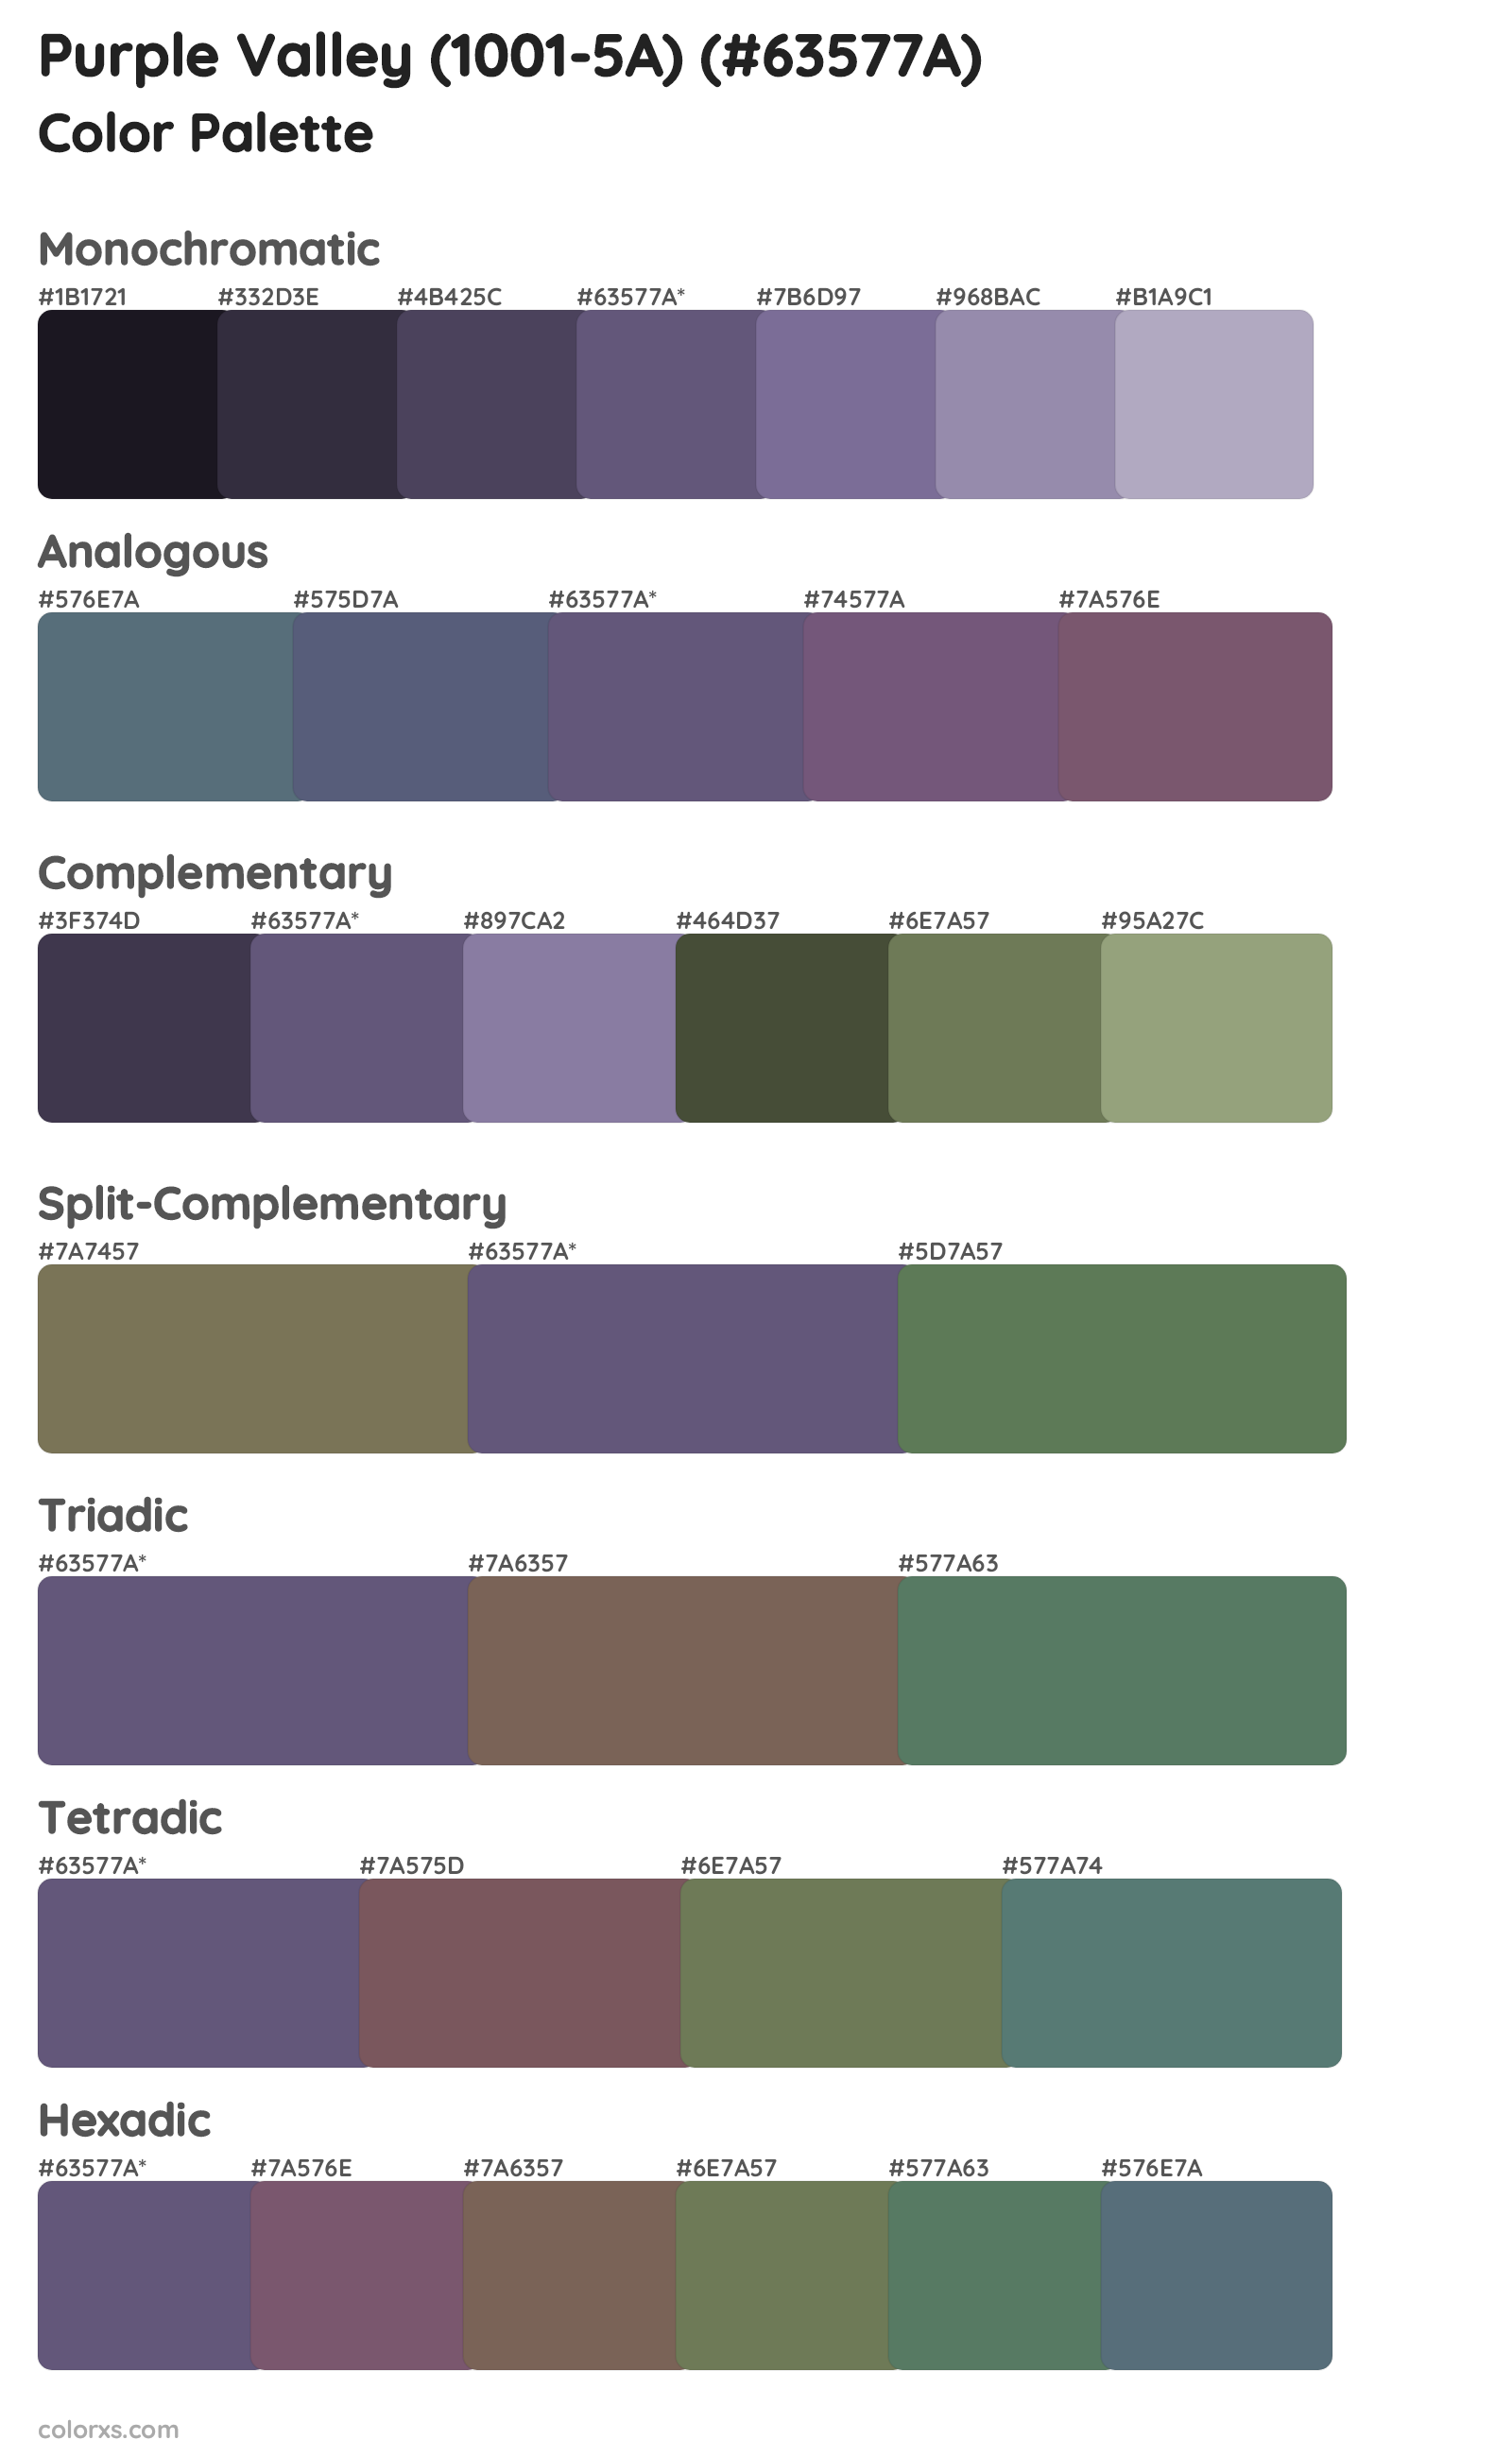 Purple Valley (1001-5A) Color Scheme Palettes